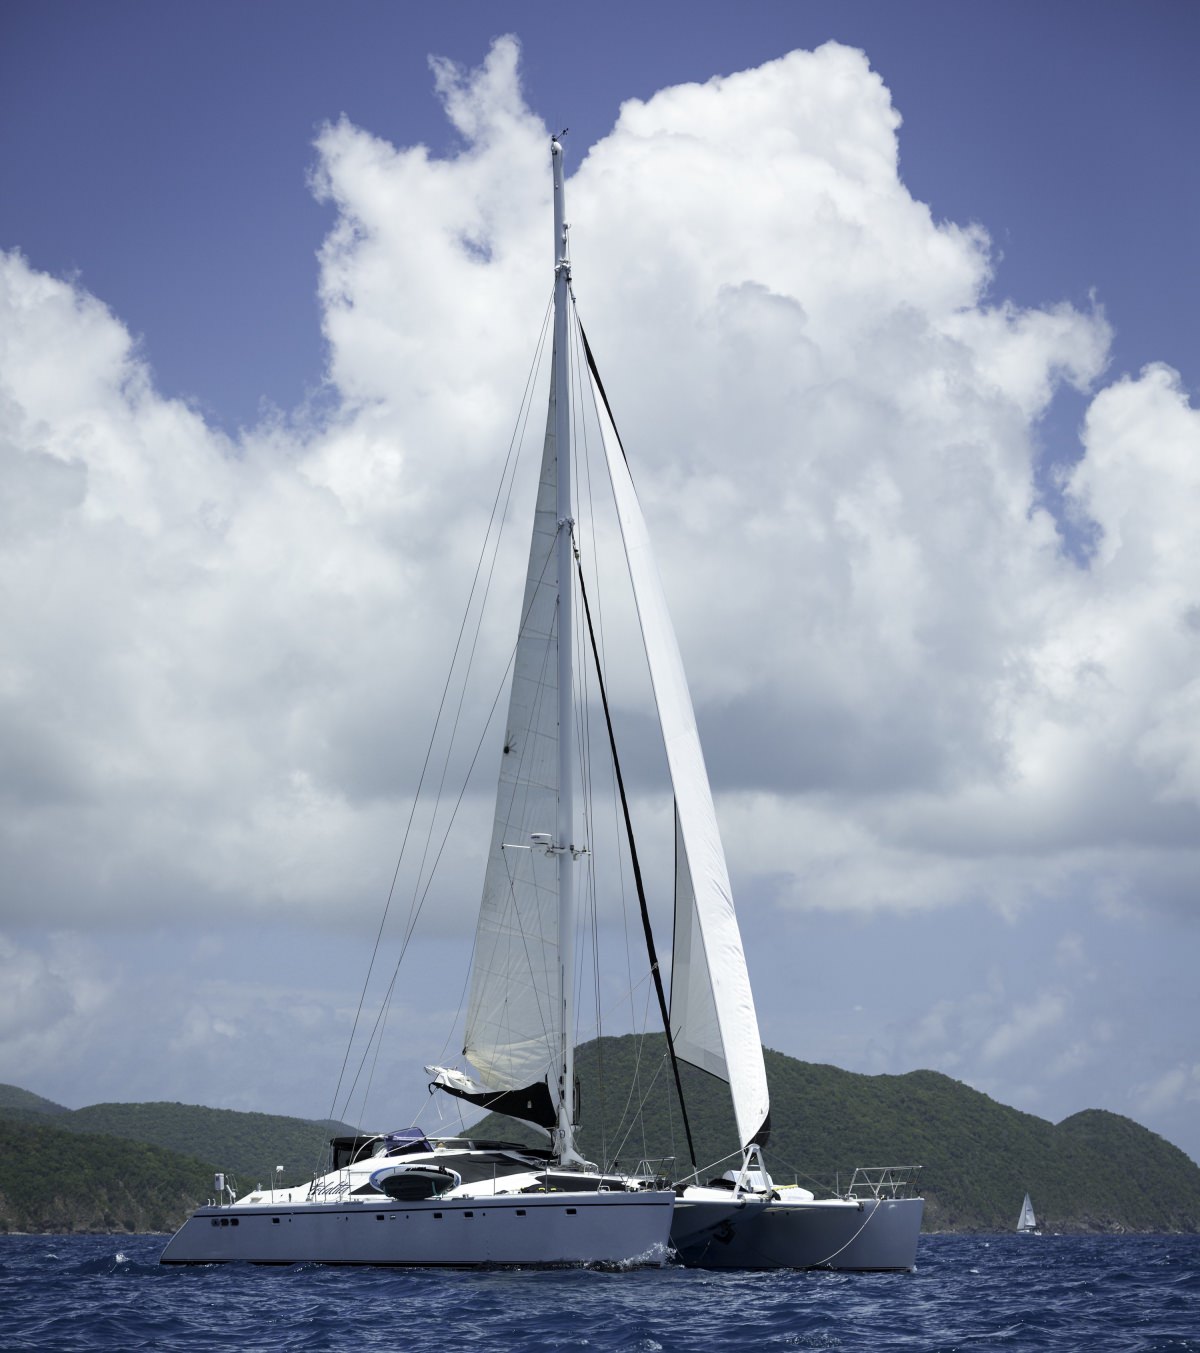 An Excellent Caribbean Scuba Diving Yacht Charter!